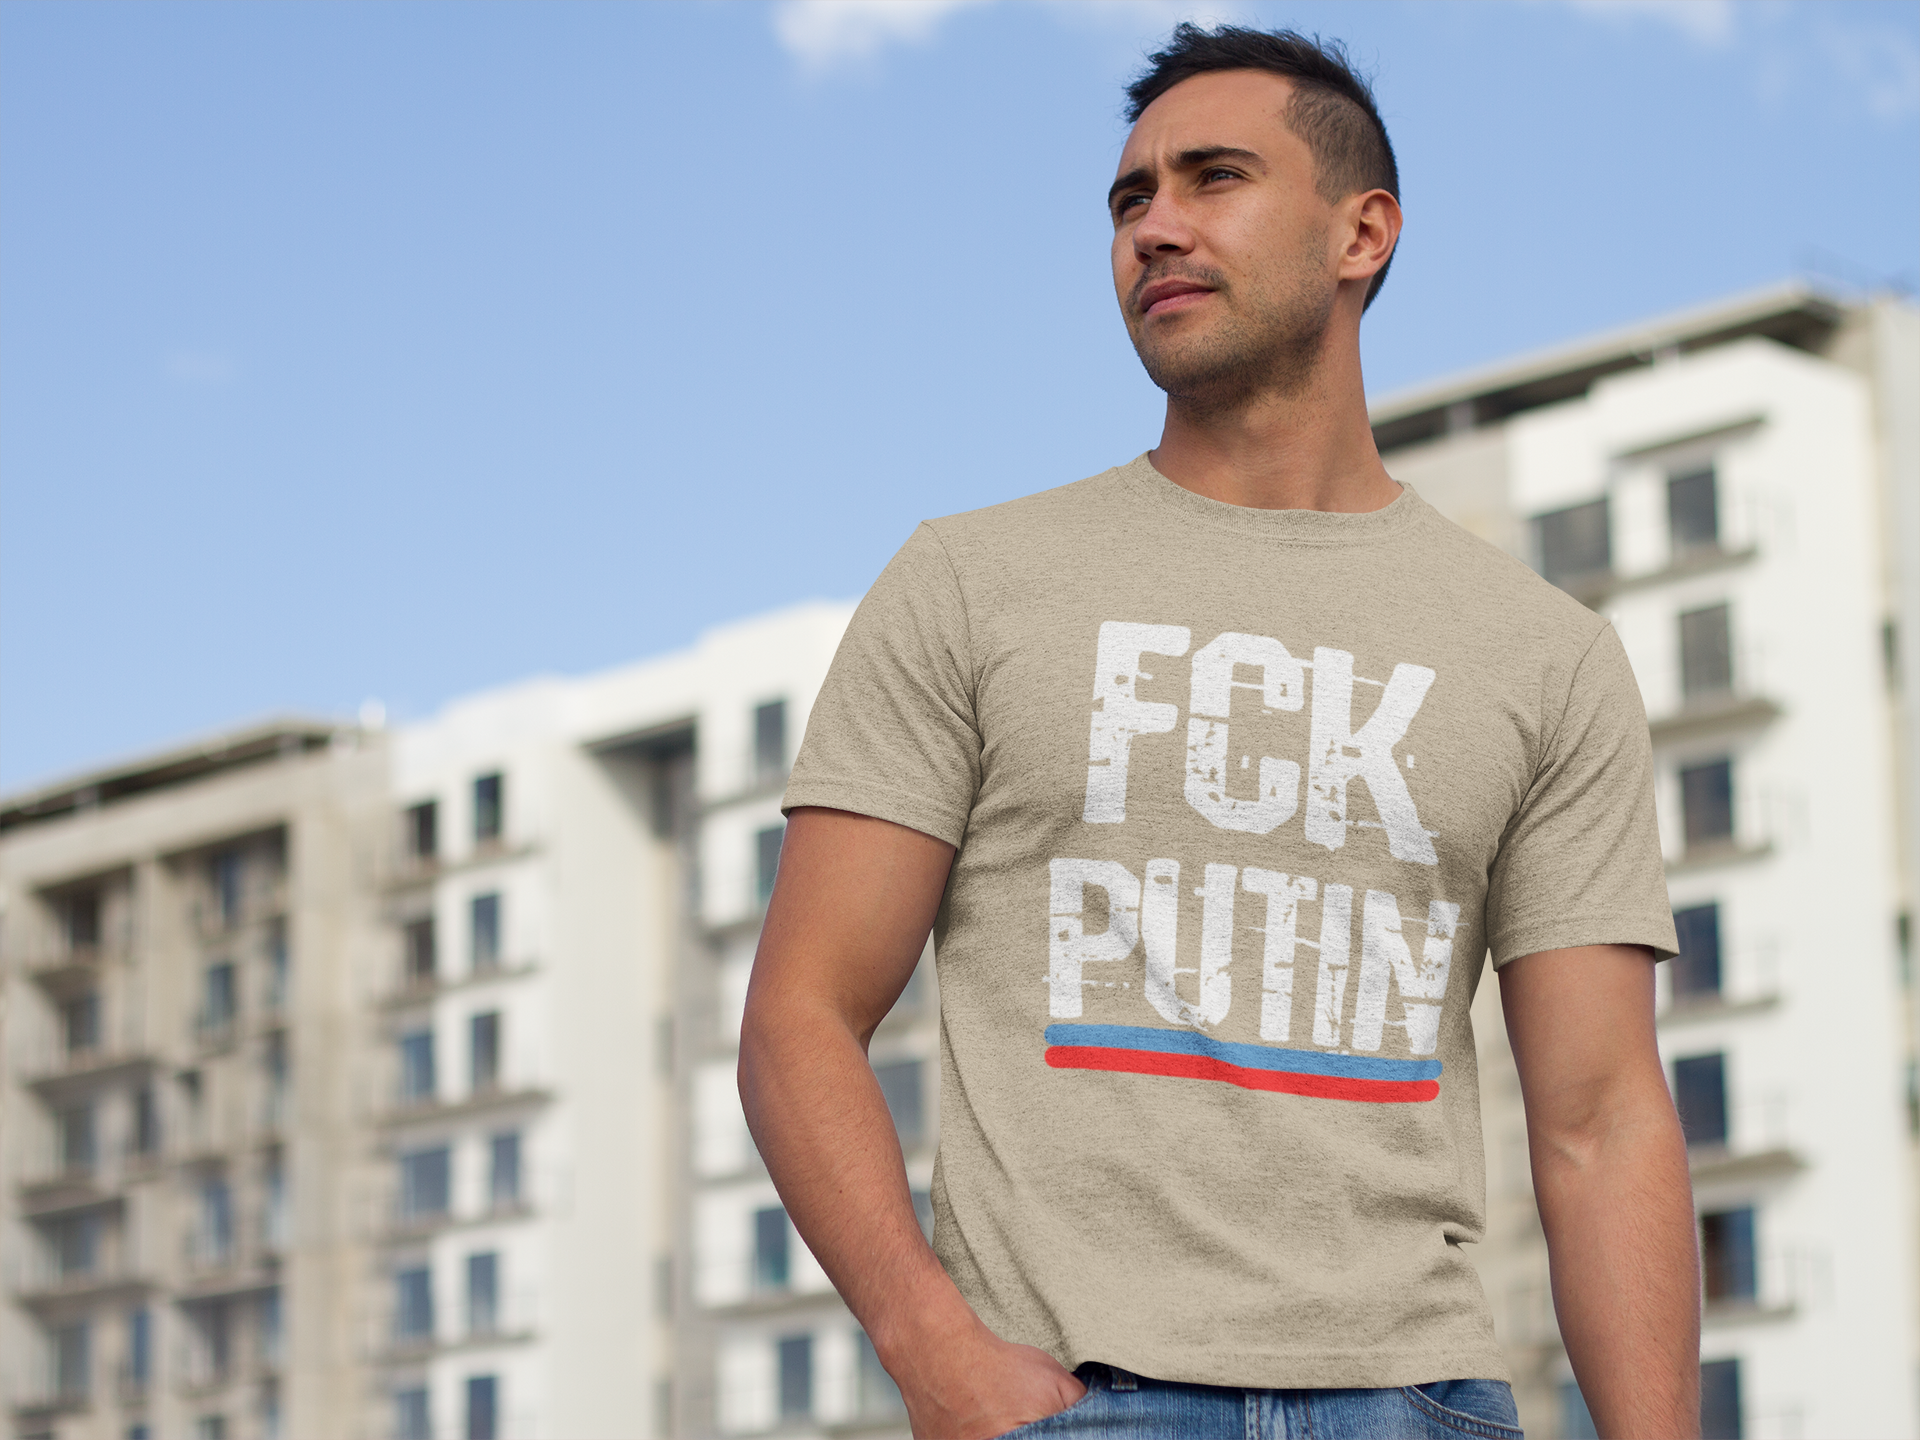 FCK Putin T-Shirt för män. Grymt många färger att välja mellan. Beställ din T-Shirt i dag!